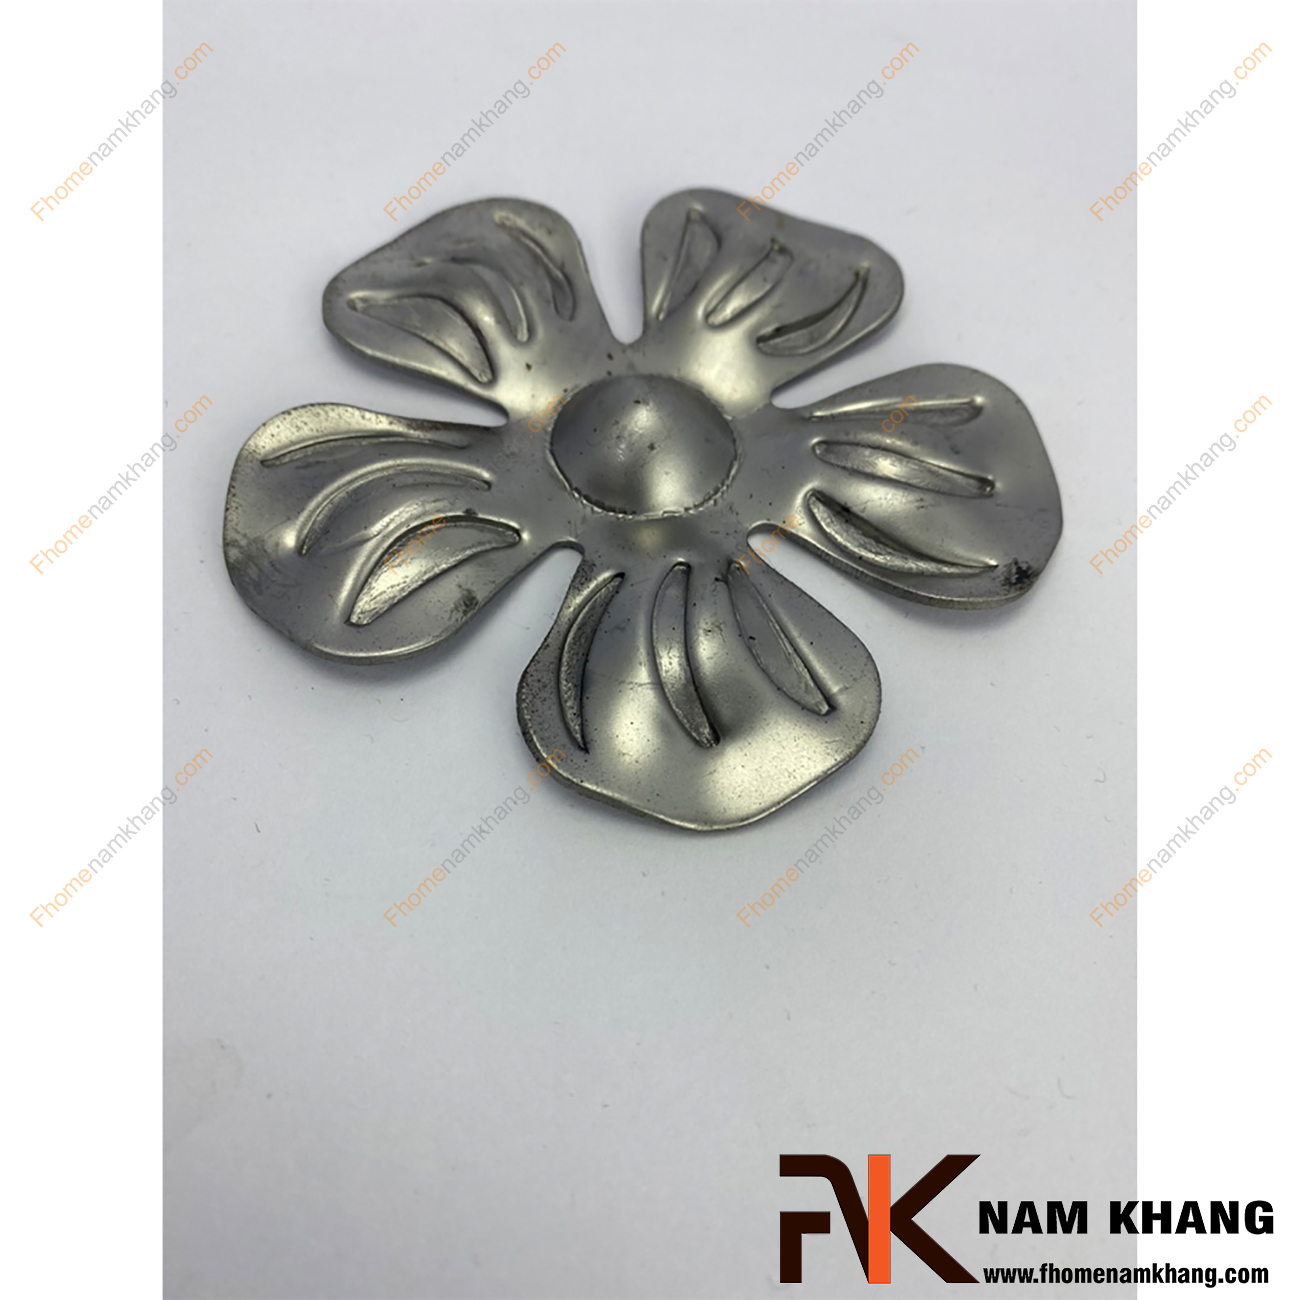 Hoa thép dập hình bông hoa 5 cánh dù NKS-05T được sản xuất từ thép tấm có độ dày 1-2mm, có bề mặt láng mịn, hàn gắn dể dàng vào các chi tiết thép khác.